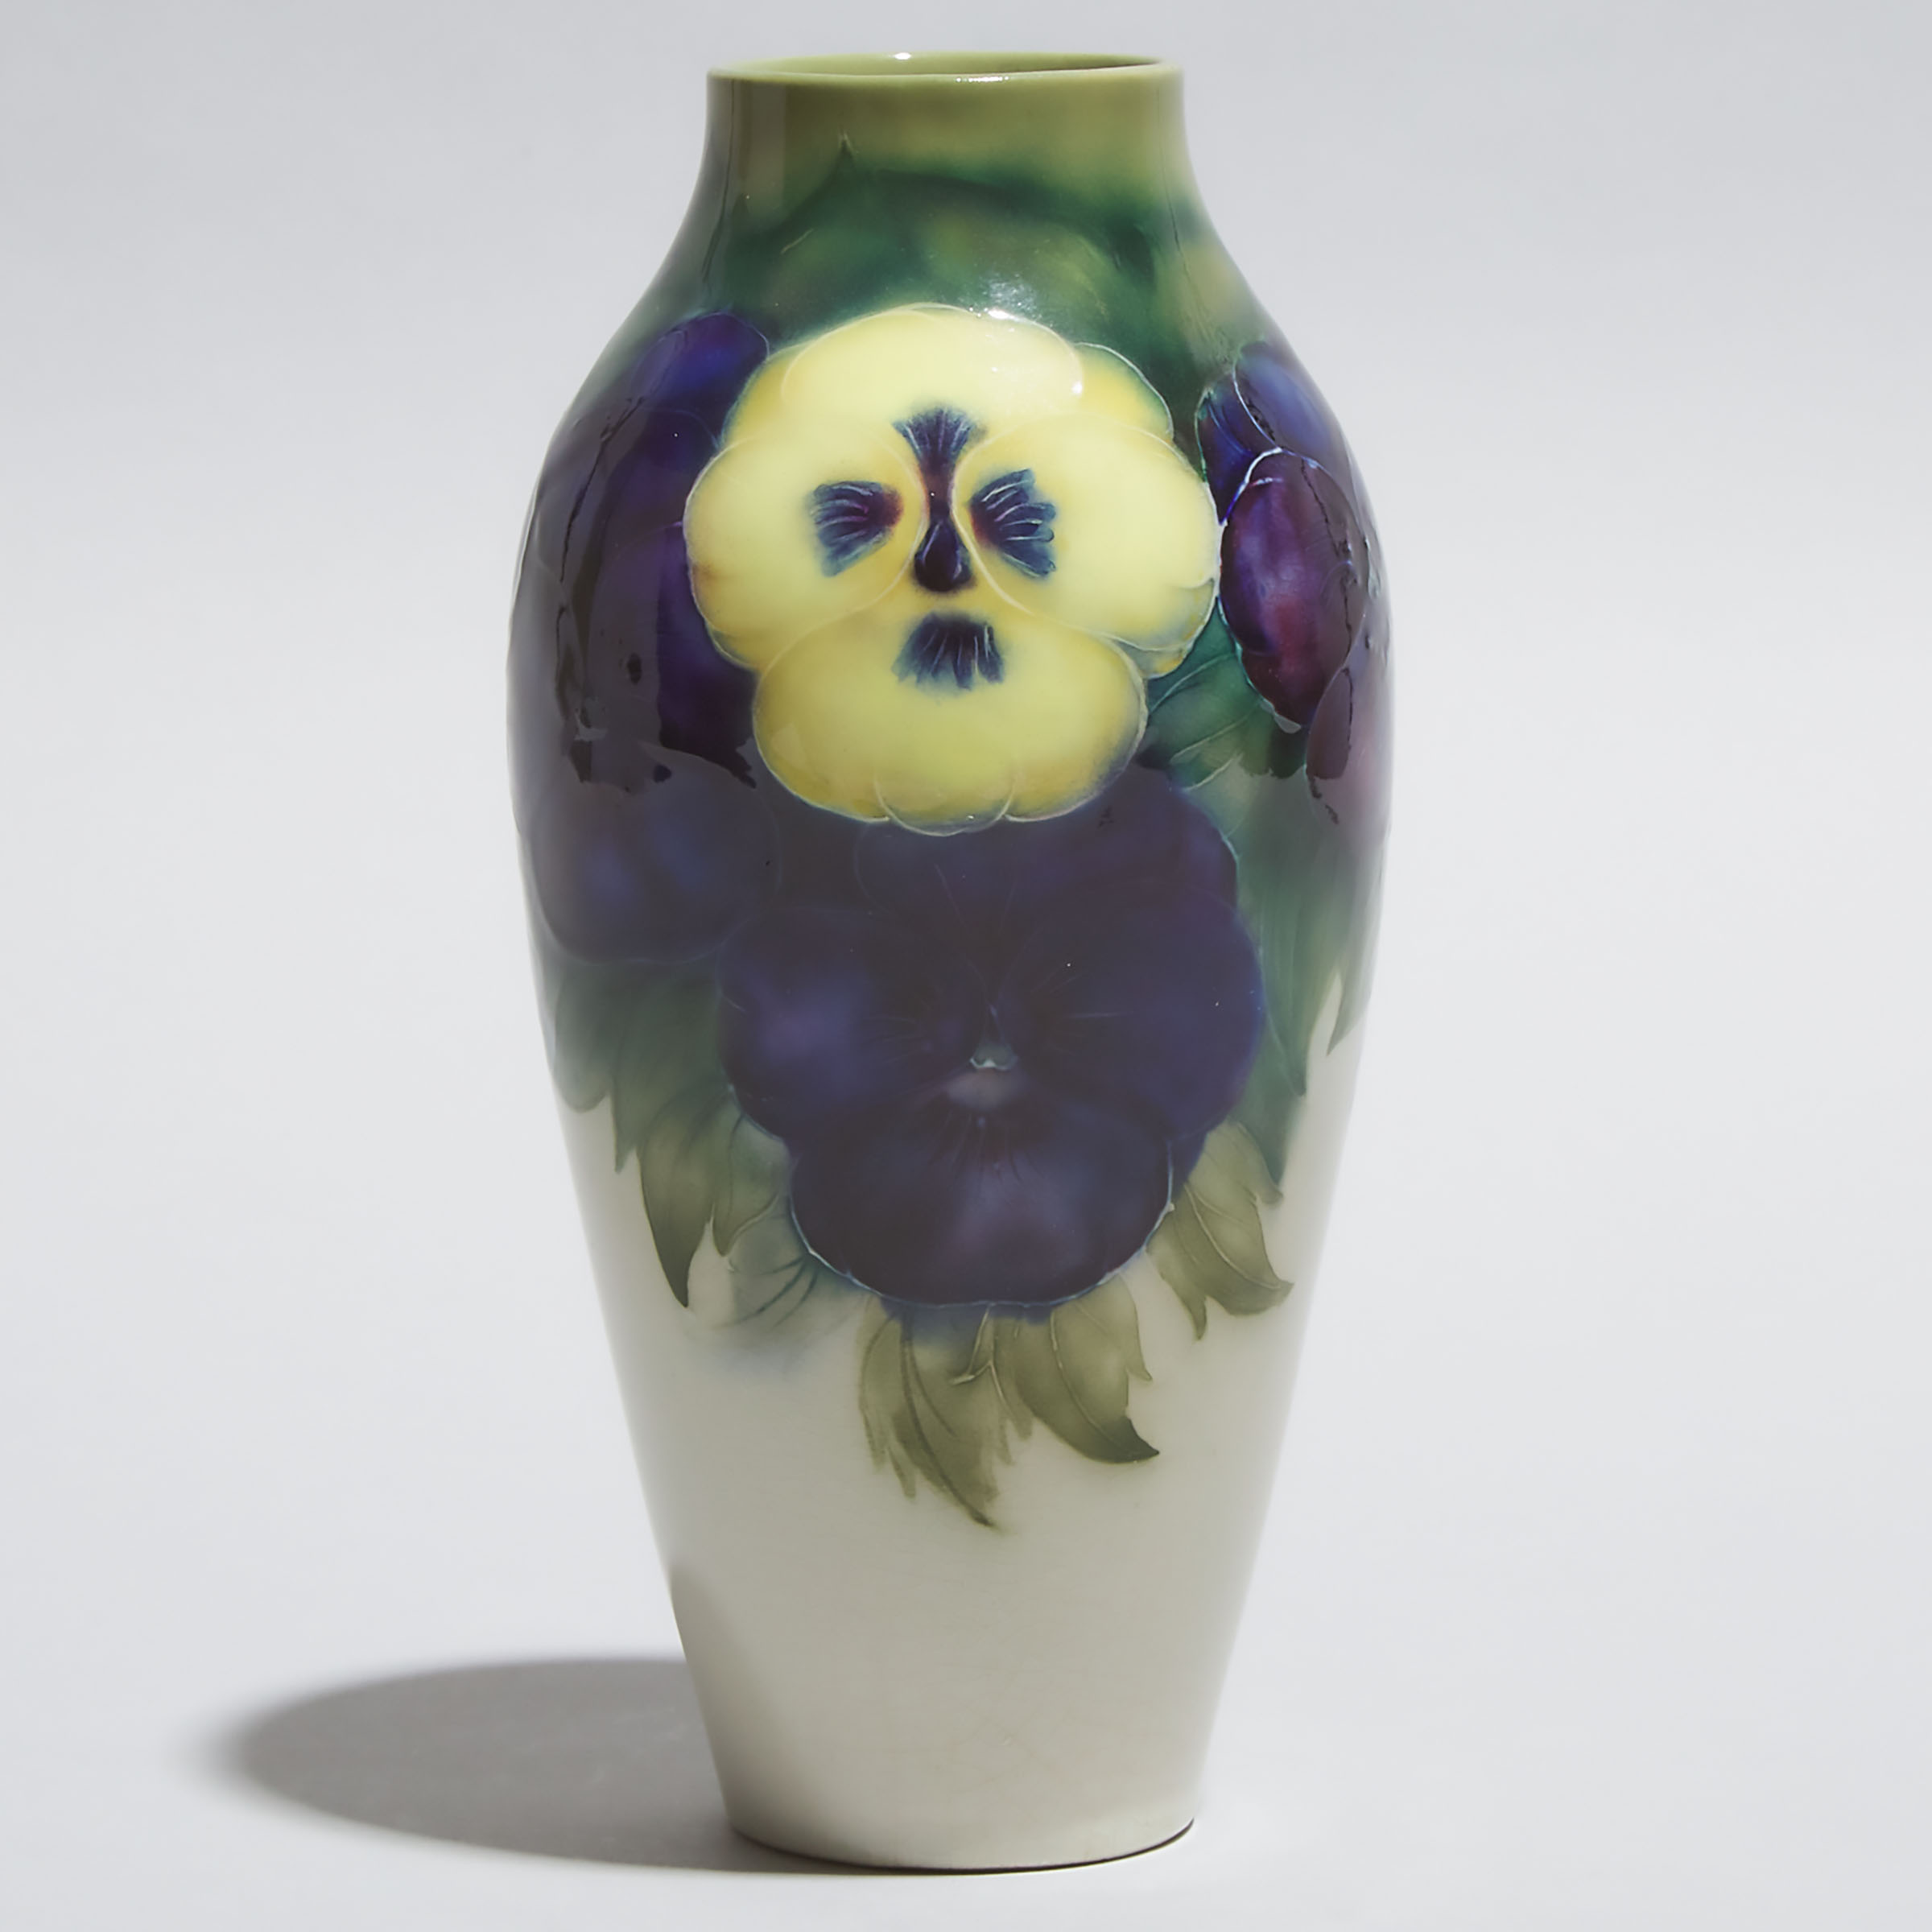 Macintyre Moorcroft Pansy Vase, c.1910-12